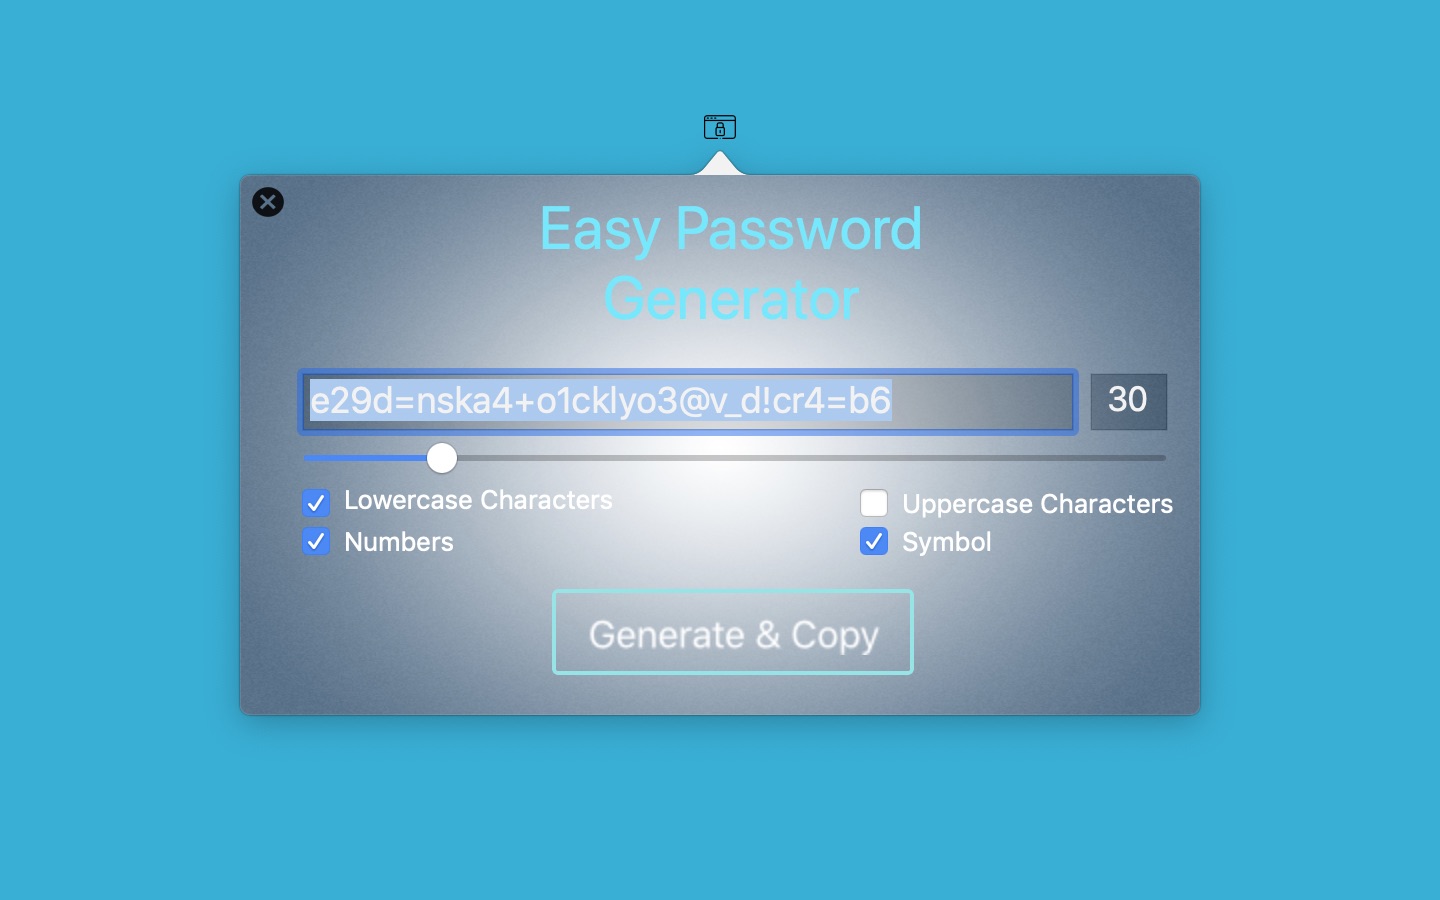 Easy Password 1.0 : Main Window